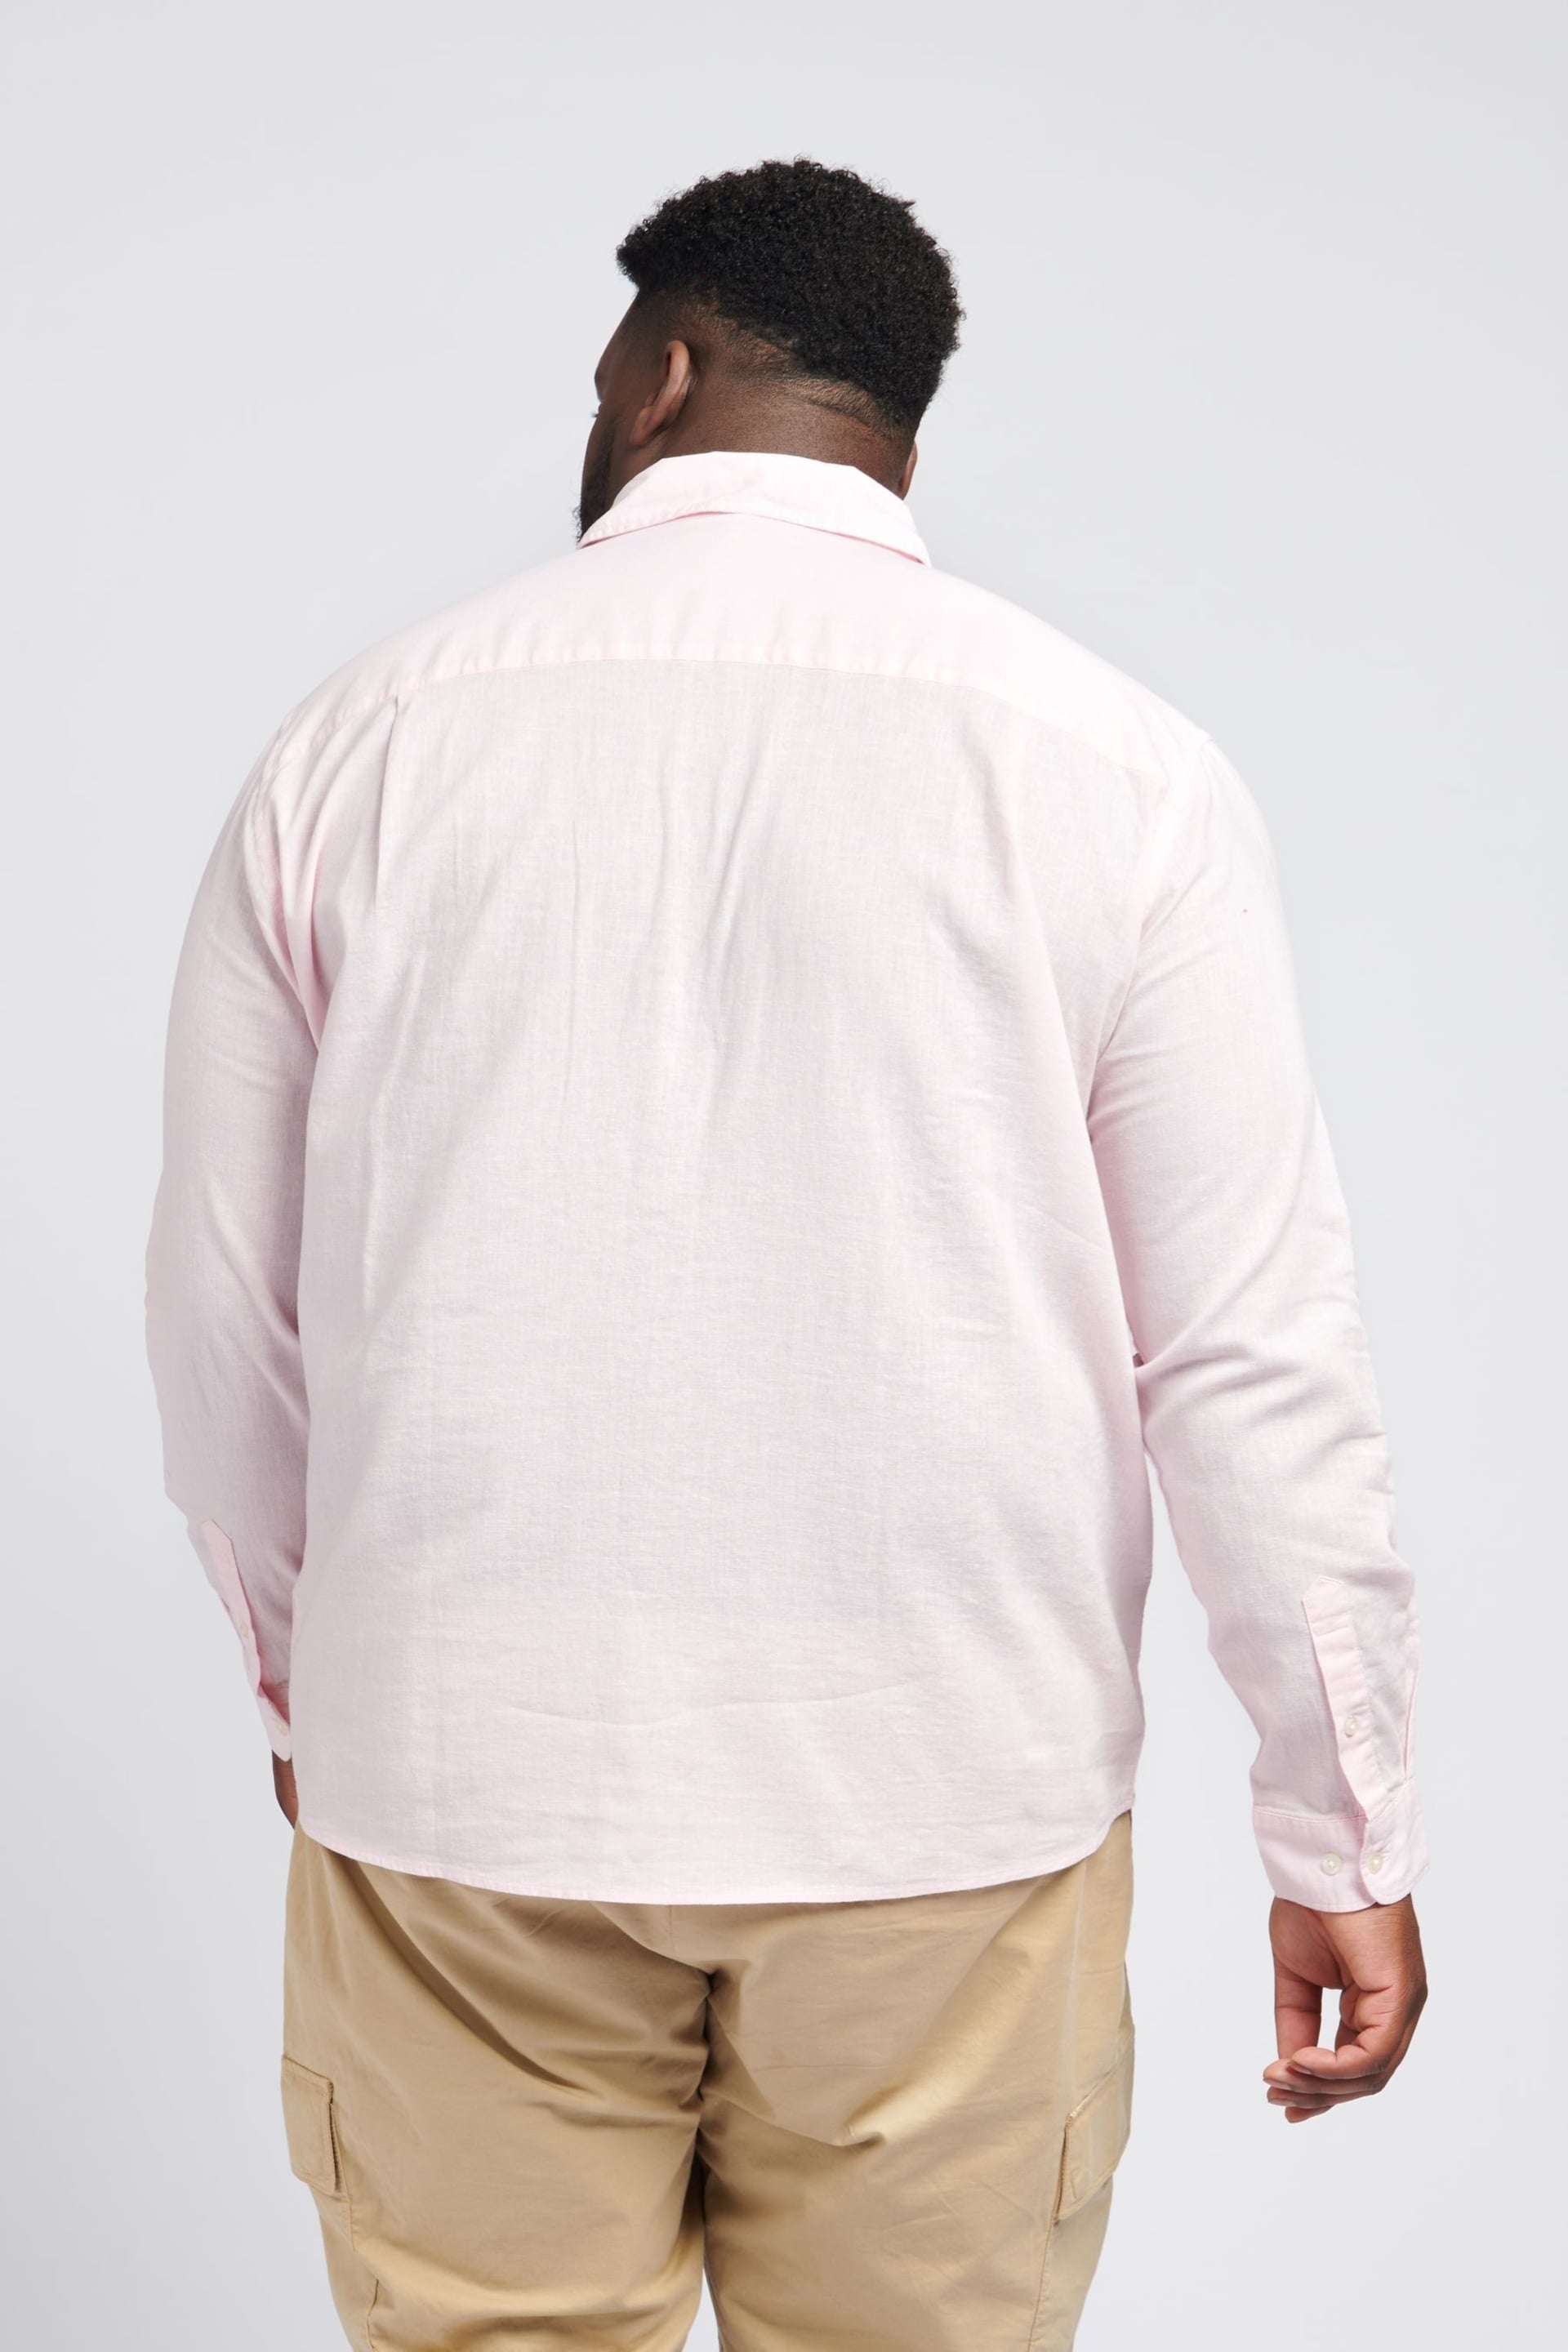 U.S. Polo Assn. Linen Blend Relaxed Long Sleeve Shirt - Image 2 of 4